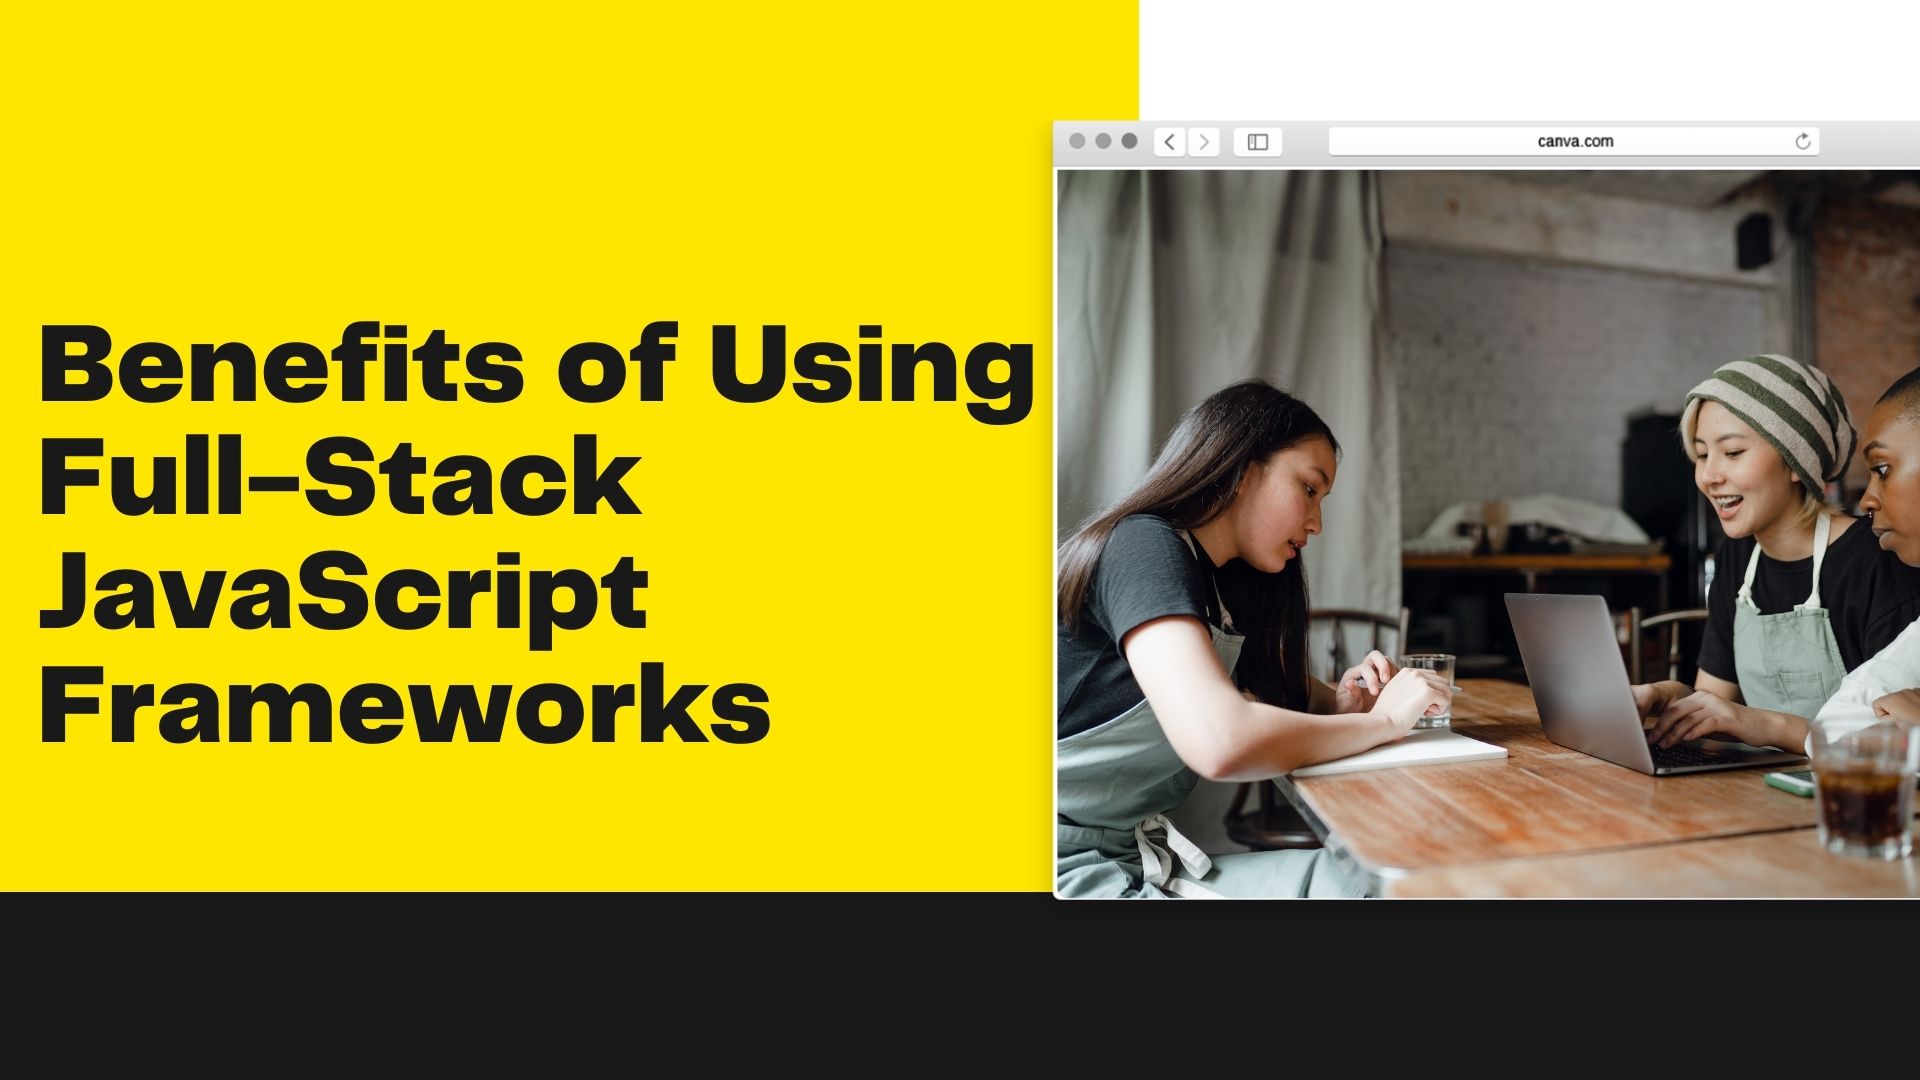 Benefits of Using Full-Stack JavaScript Frameworks